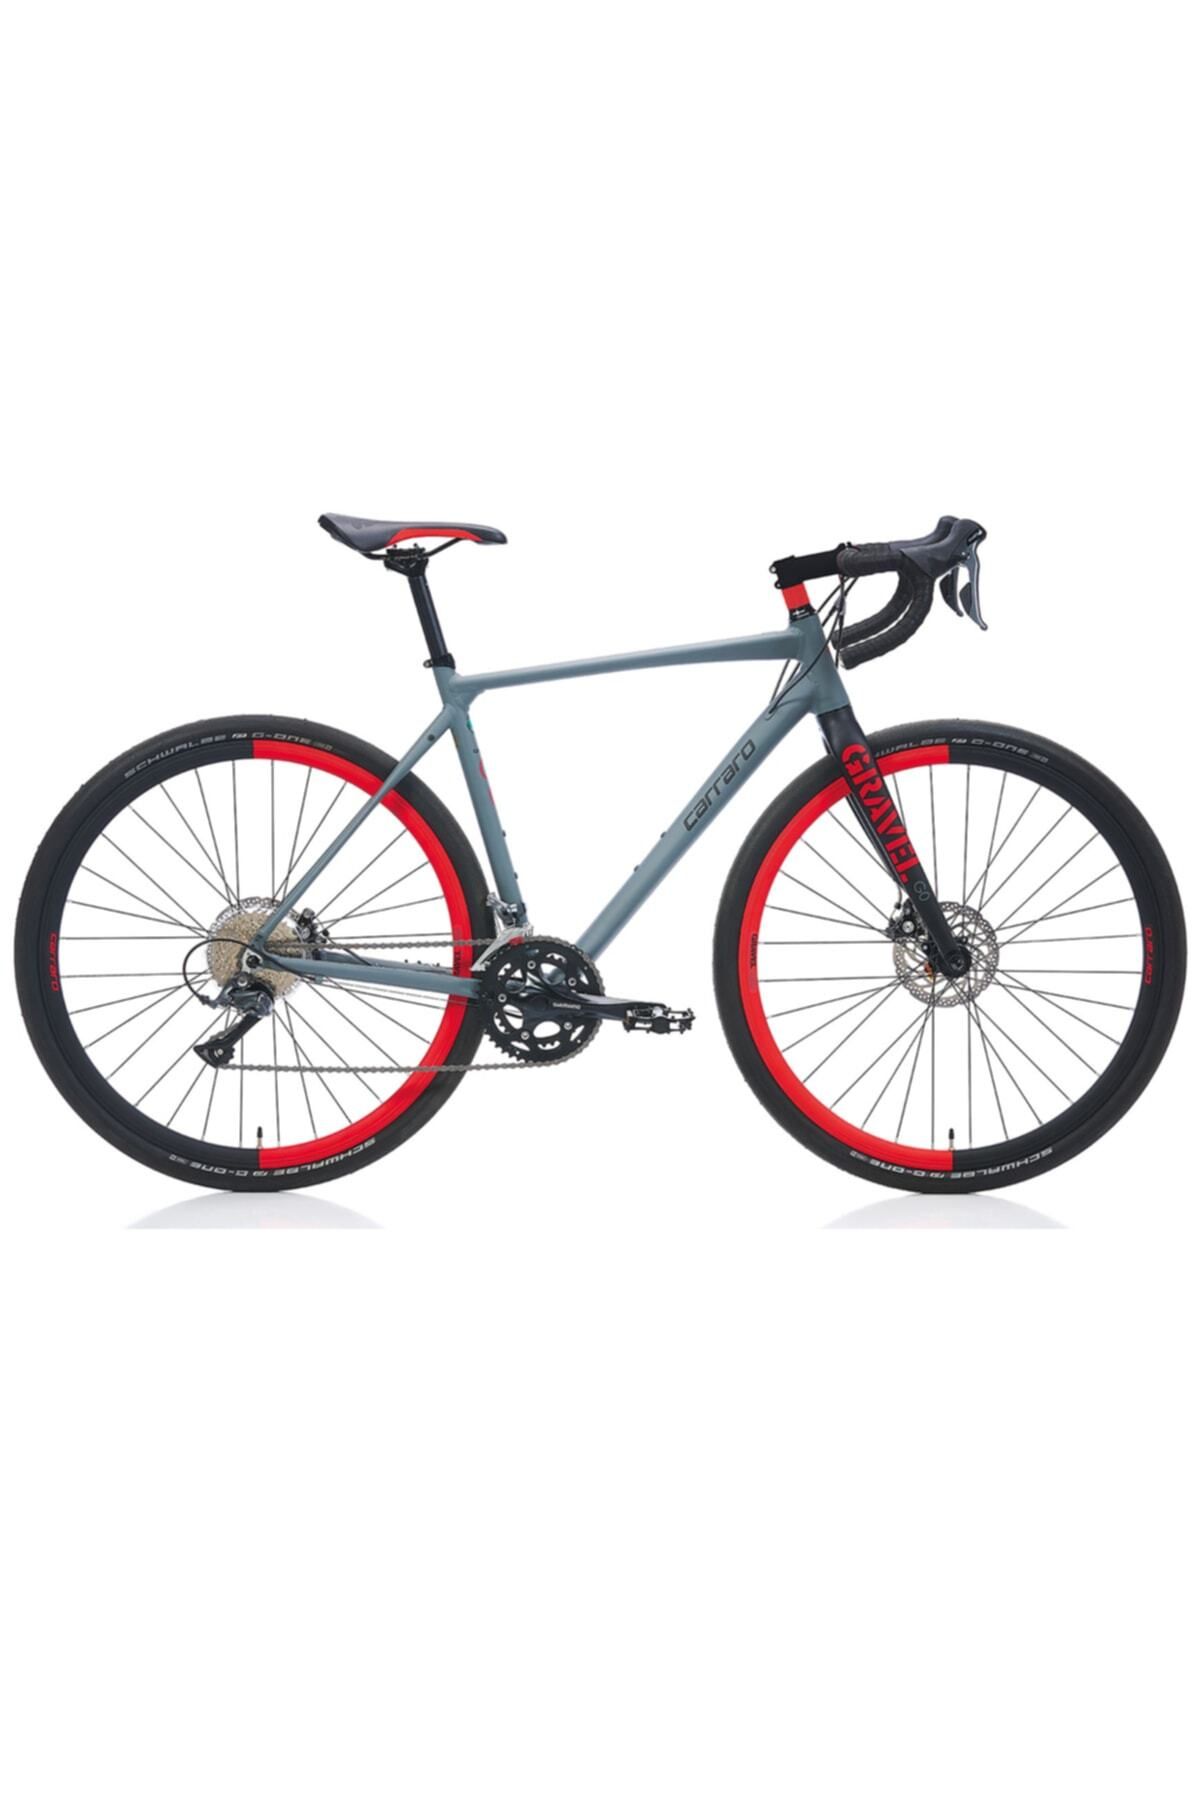 Carraro Gravel G0 28 Jant Yol & Yarış Bisikleti (mat Antrasit, Siyah, Kırmızı)